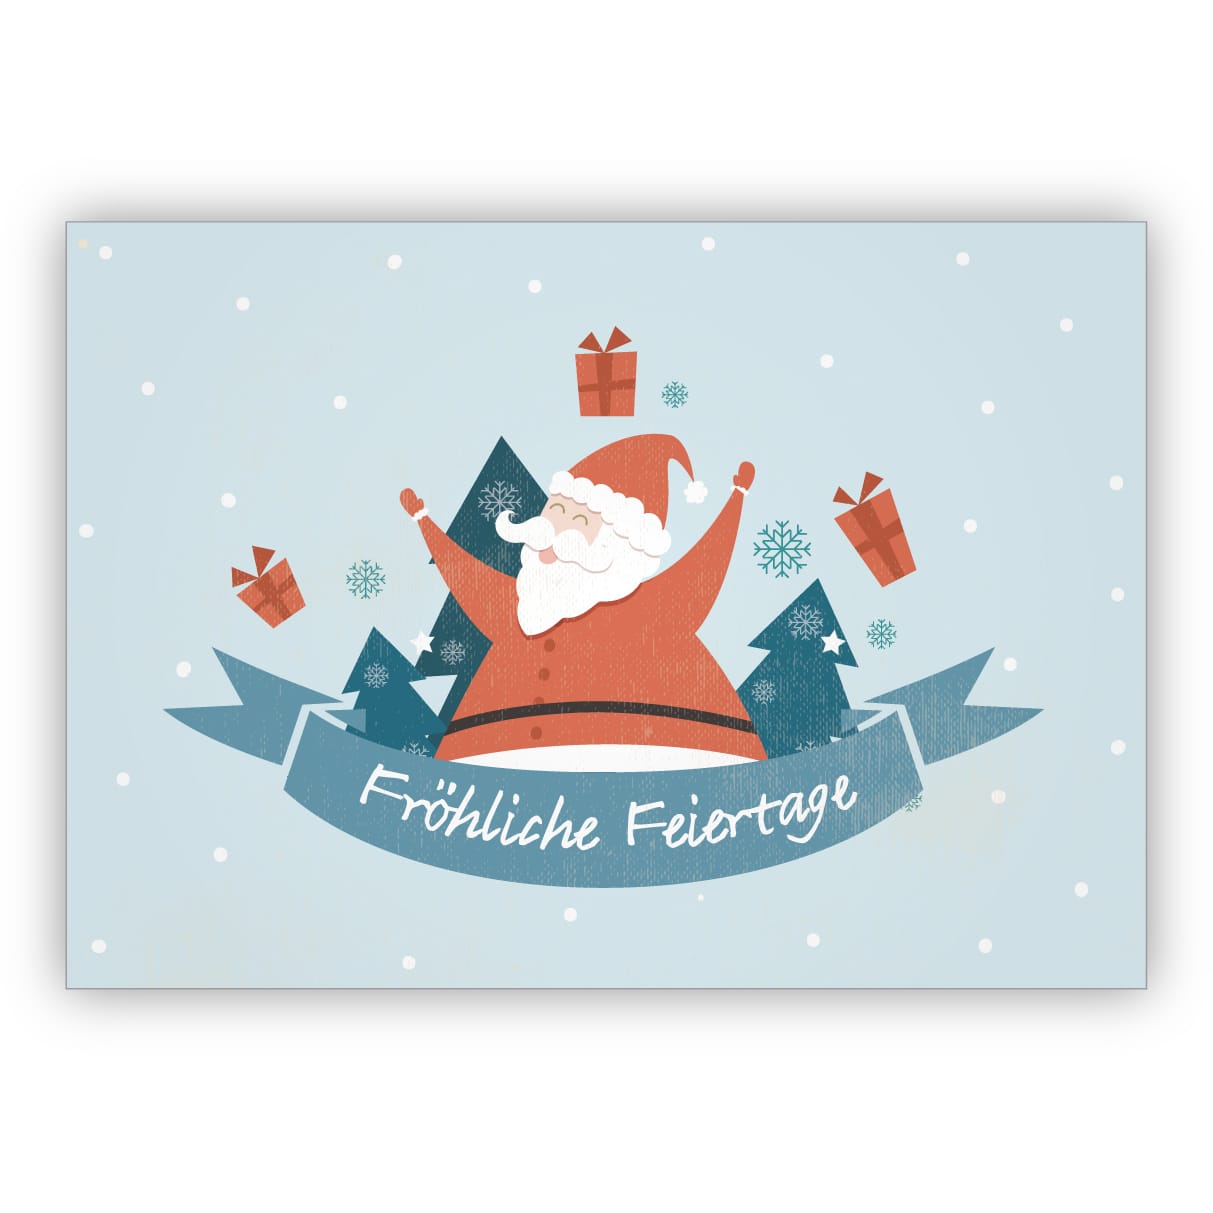 Süße Retro Weihnachtskarte mit Geschenke bringendem Weihnachtsmann: Fröhliche Feiertage